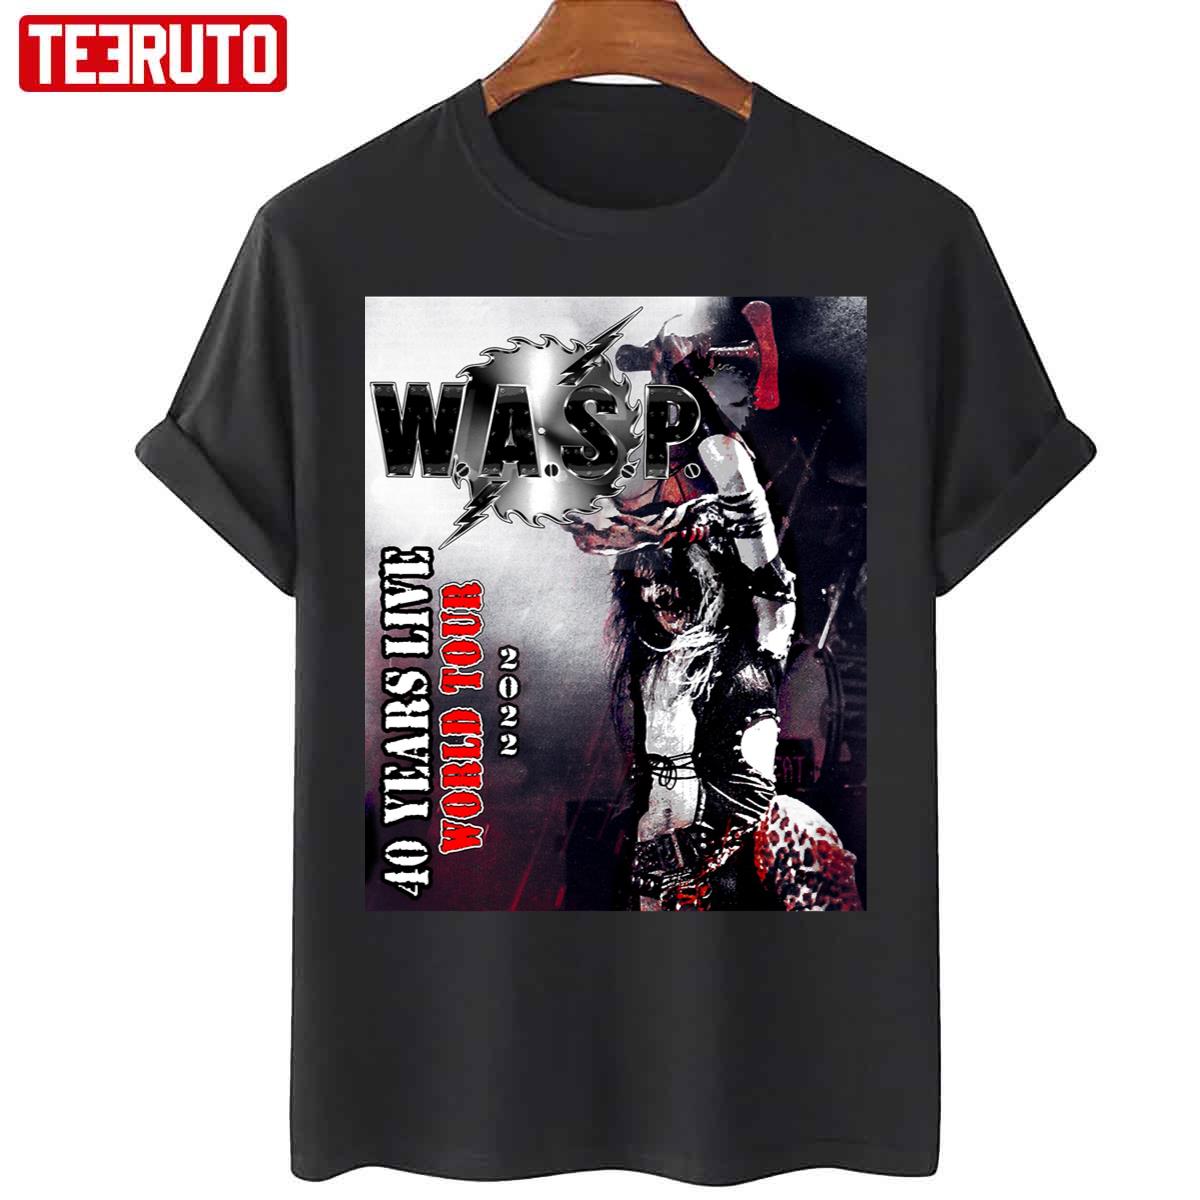 Wasp 40 Years Tour 2022 Masokt Unisex T-Shirt